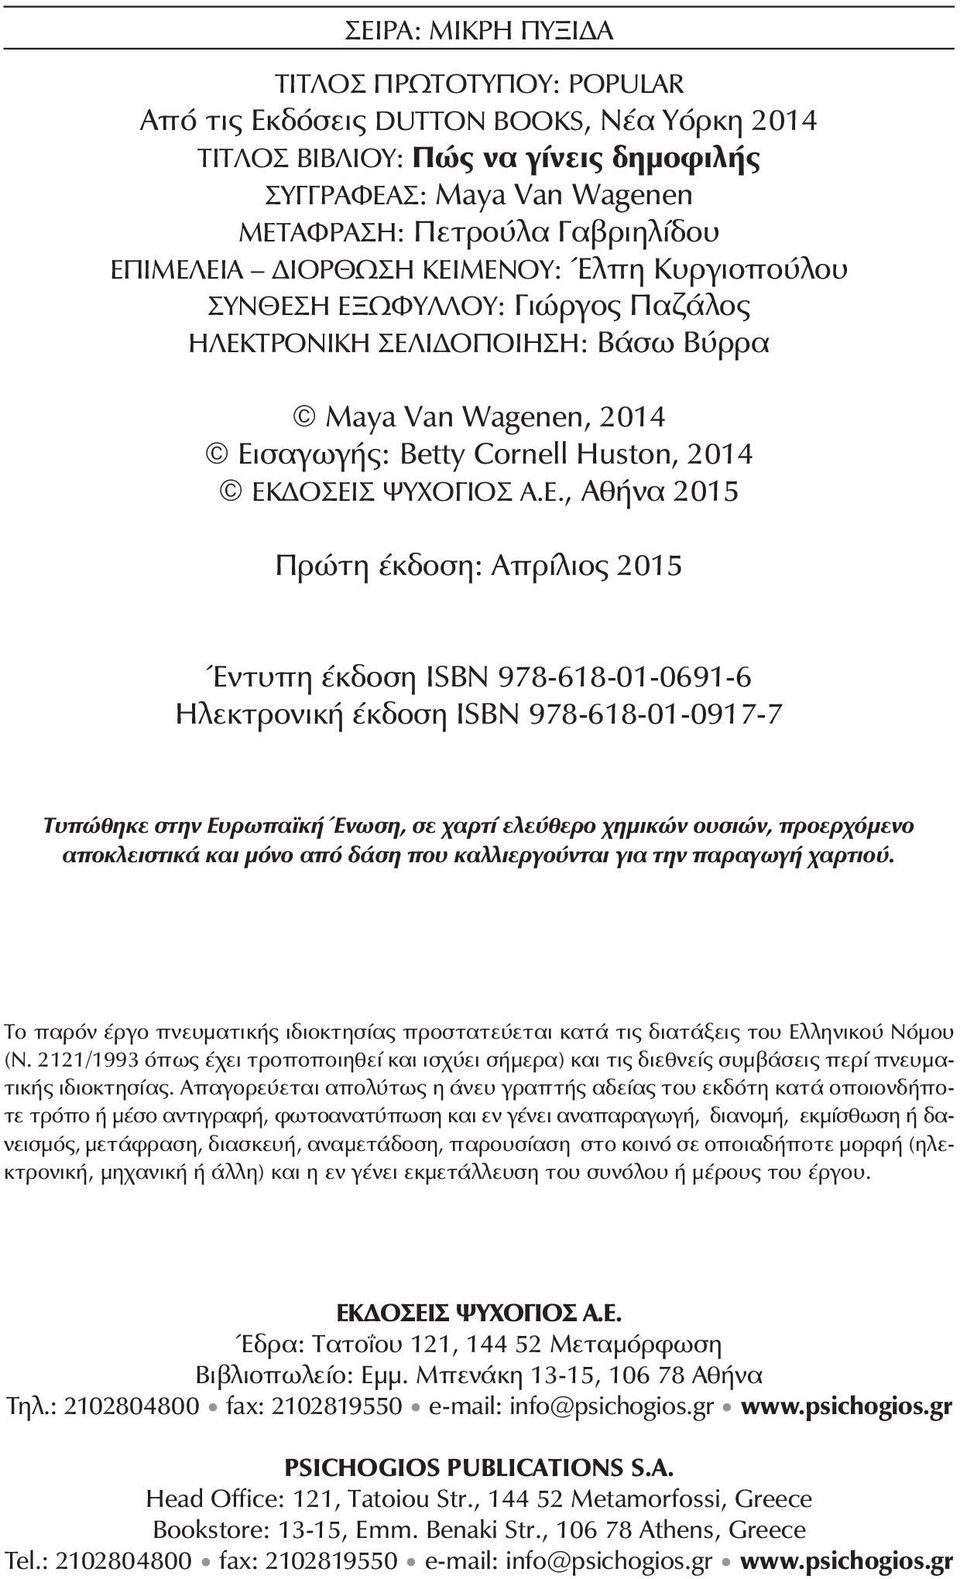 Ε., Αθήνα 2015 Πρώτη έκδοση: Απρίλιος 2015 Έντυπη έκδοση ΙSBN 978-618-01-0691-6 Ηλεκτρονική έκδοση ΙSBN 978-618-01-0917-7 Τυπώθηκε στην Ευρωπαϊκή Ένωση, σε χαρτί ελεύθερο χημικών ουσιών, προερχόμενο